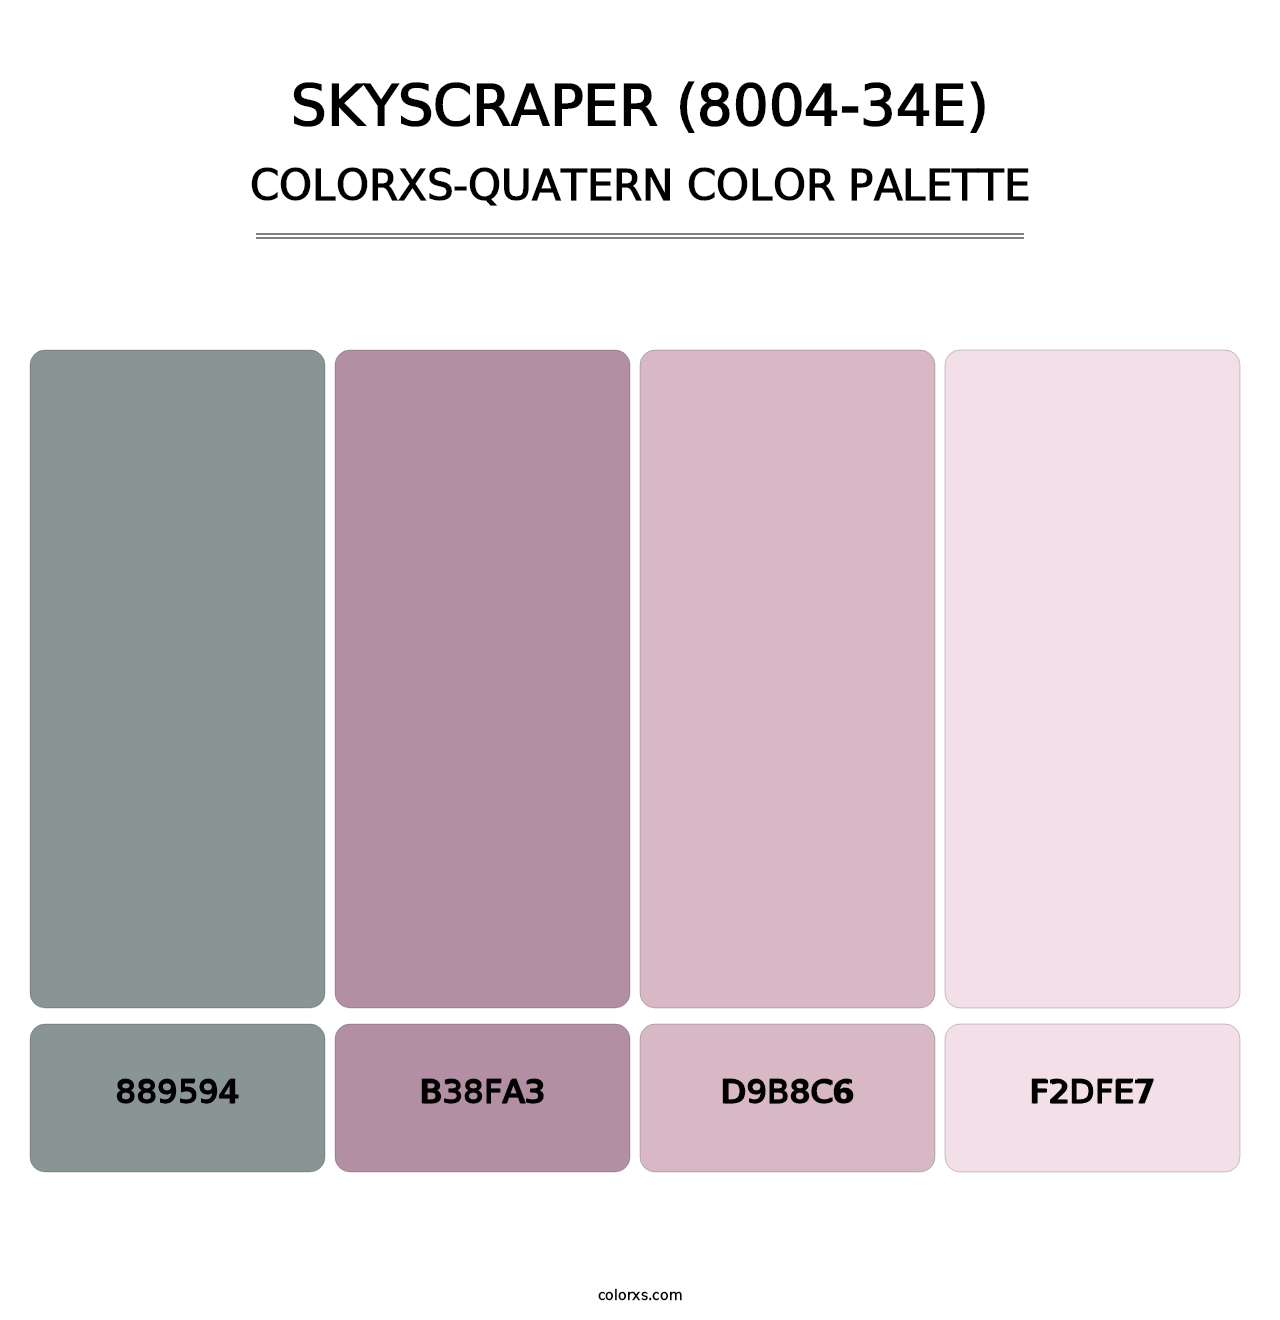 Skyscraper (8004-34E) - Colorxs Quatern Palette